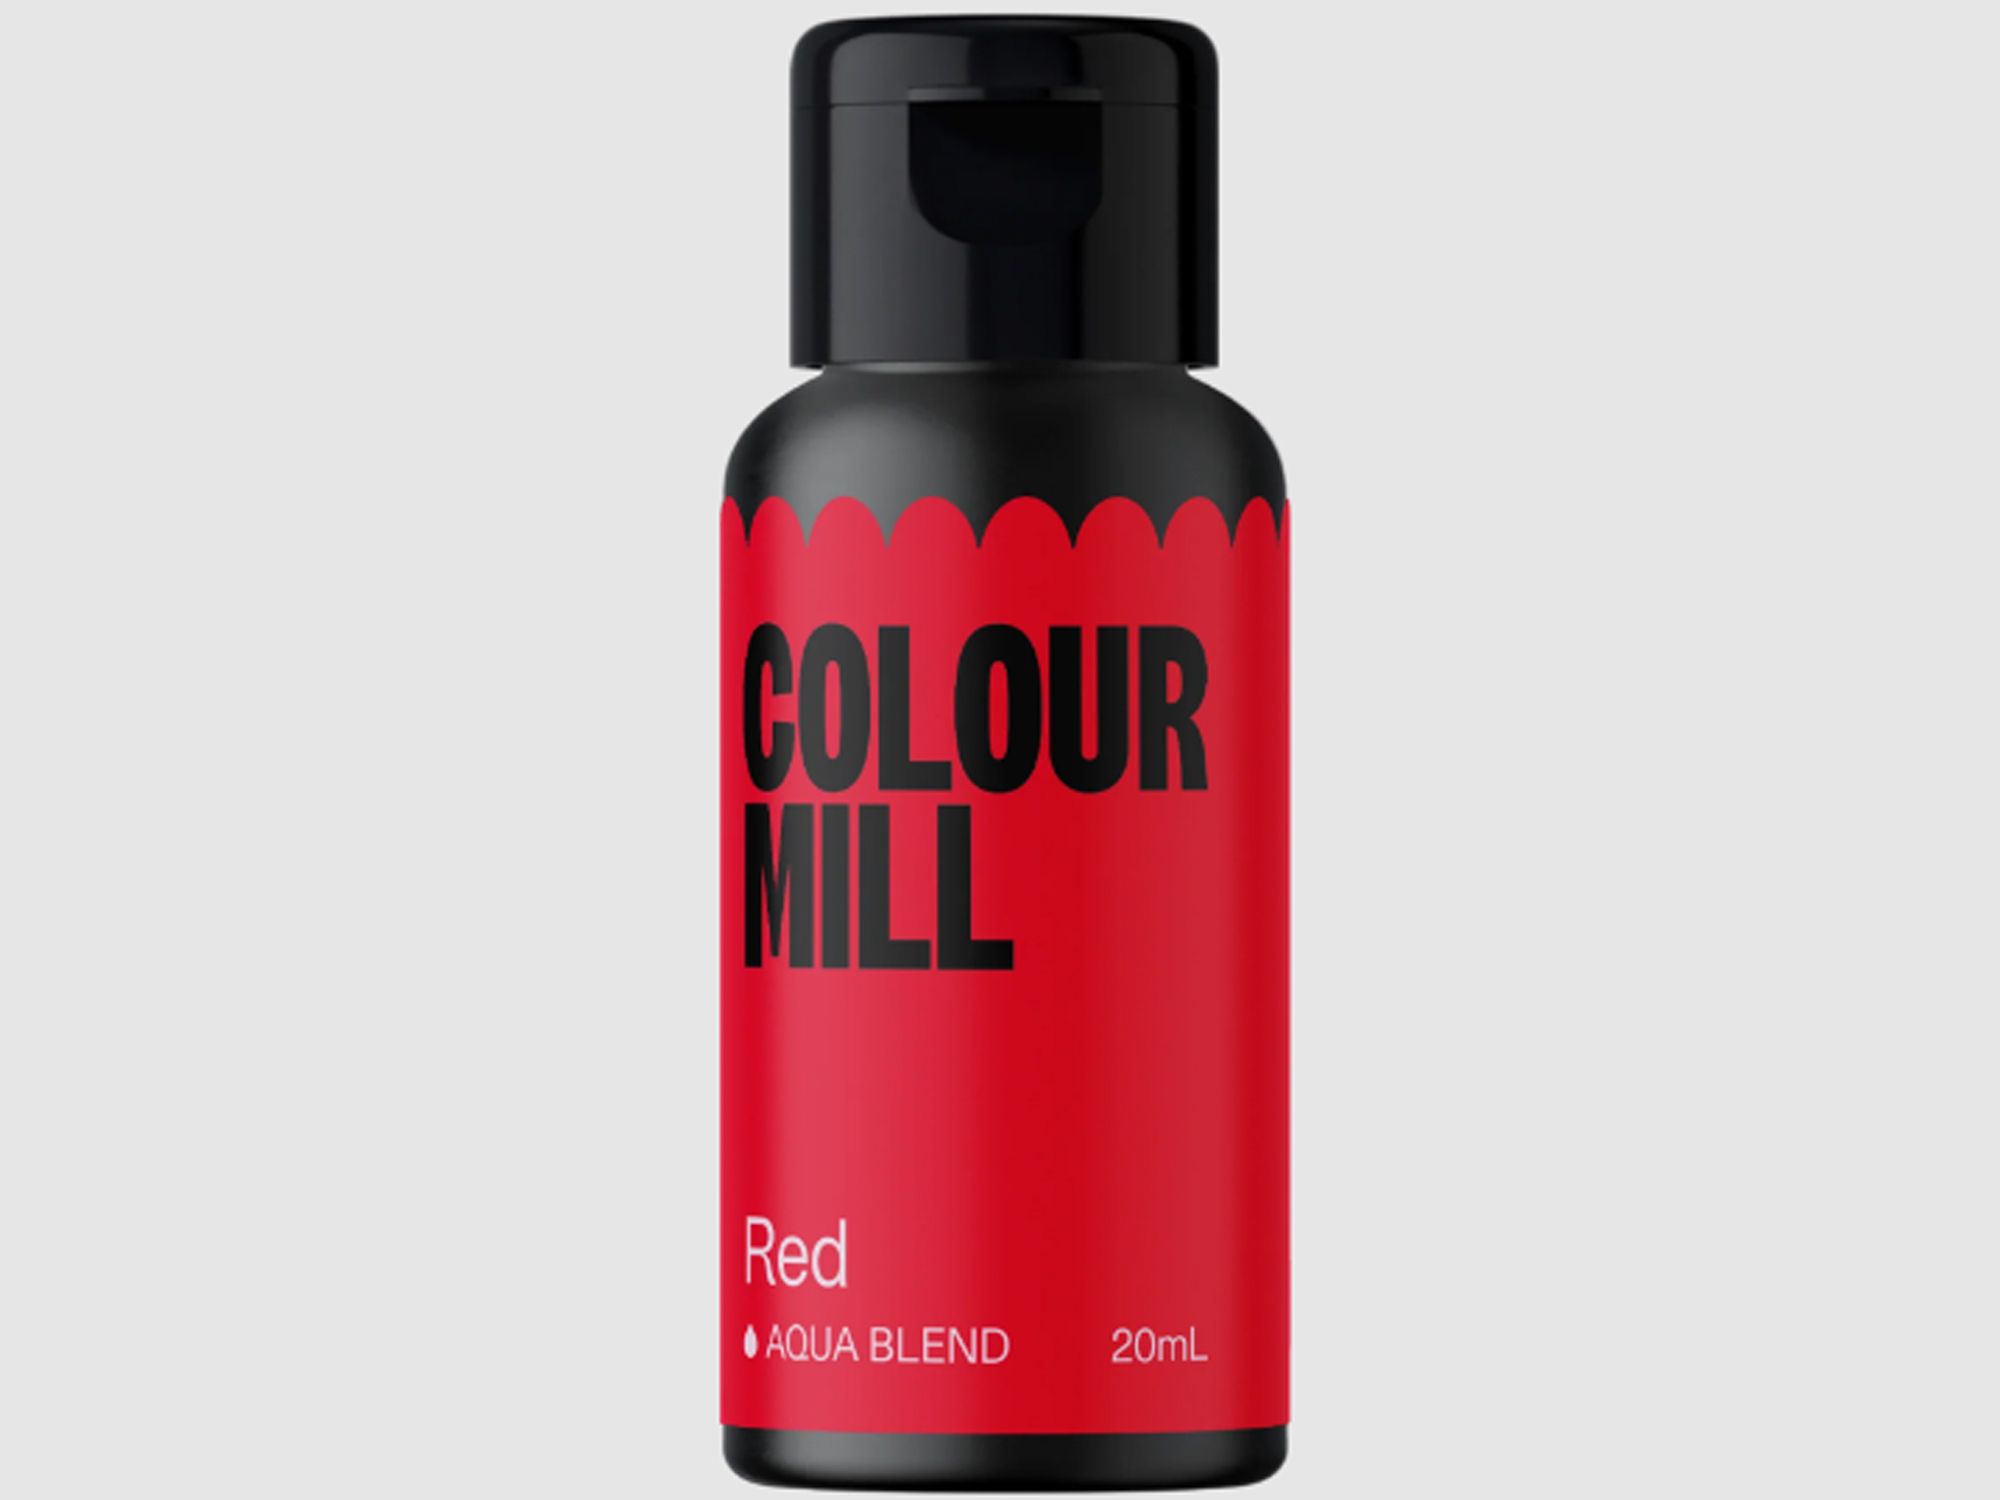 Colour Mill Red (Aqua Blend) 20ml